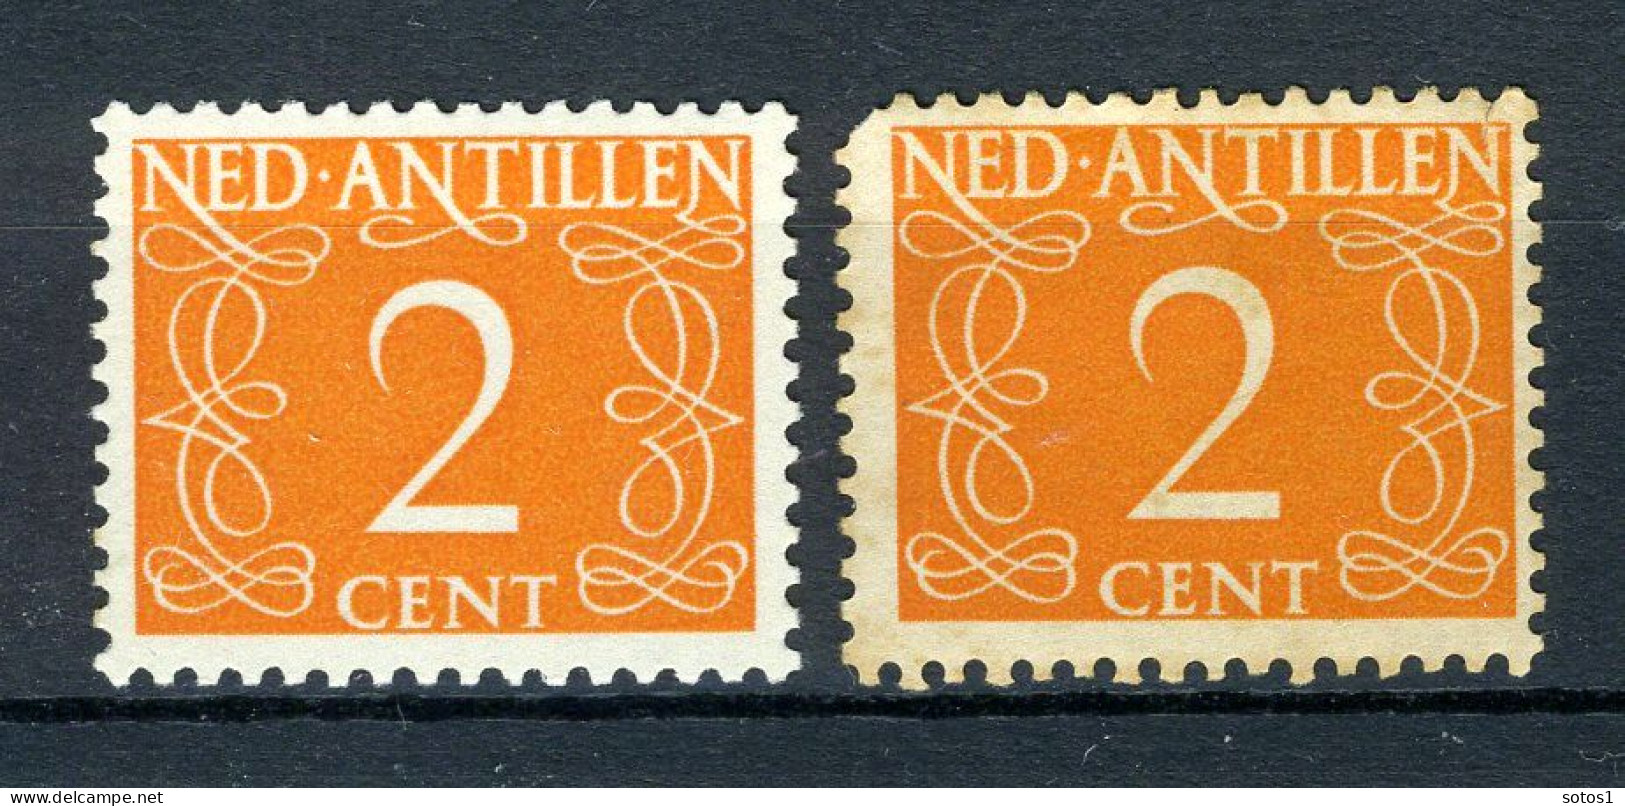 NL. ANTILLEN 213 MH 1950 - Cijfer. (2 Stuks) - Curacao, Netherlands Antilles, Aruba